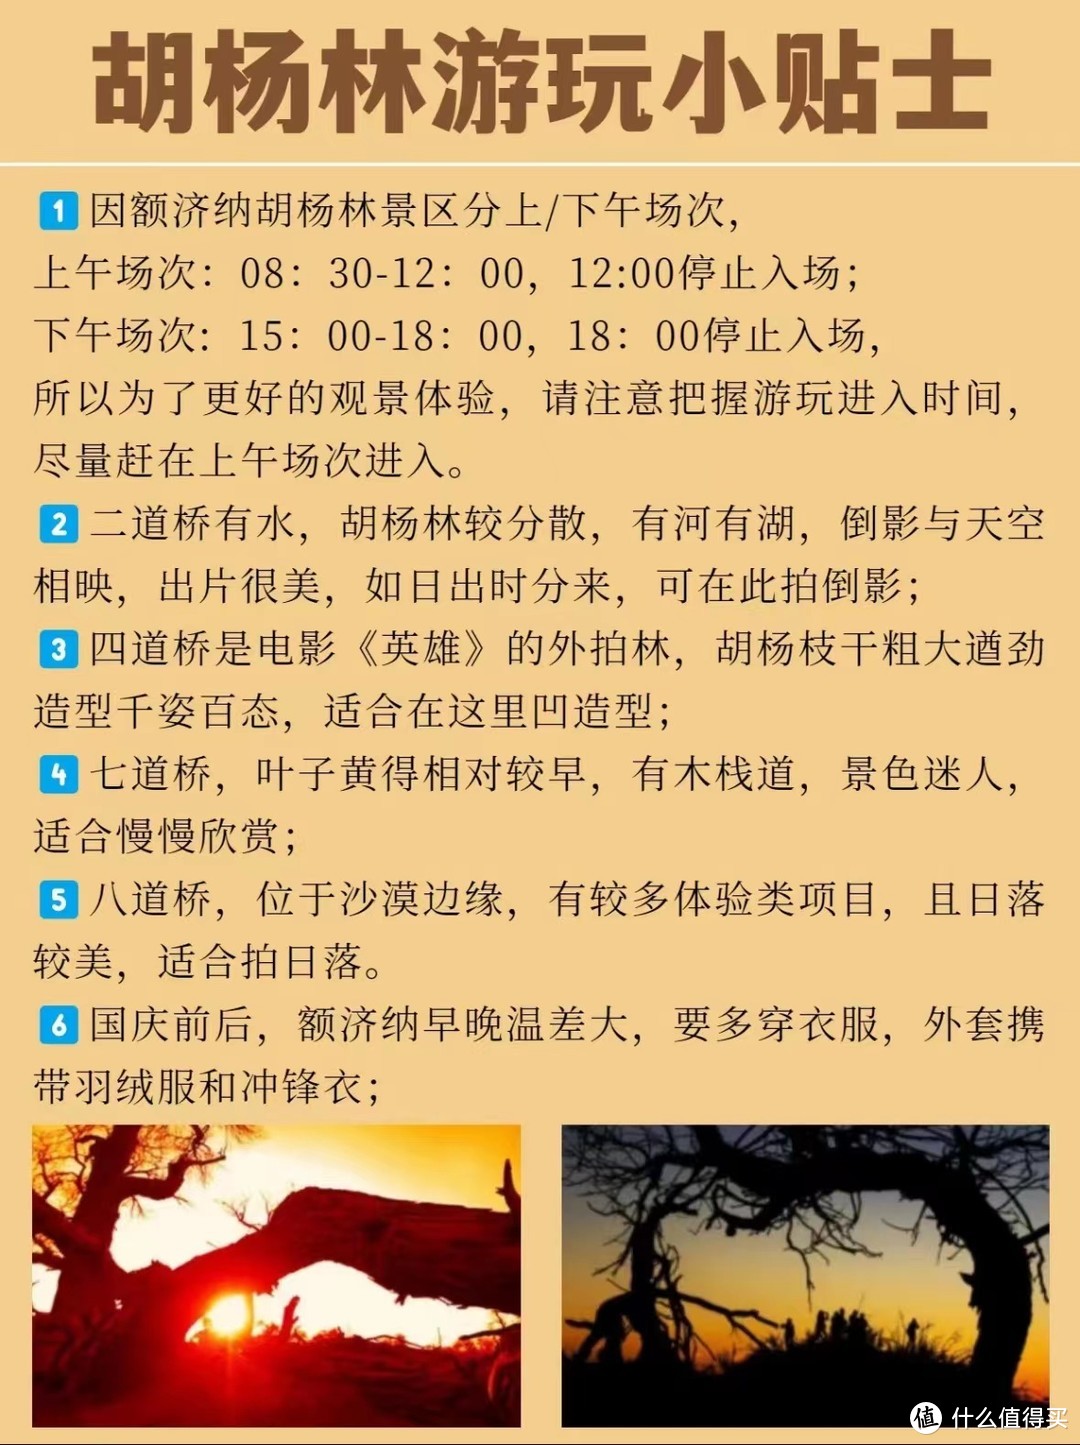 9-11月九大秋景🍂绝美胡杨林❗️附详细攻略